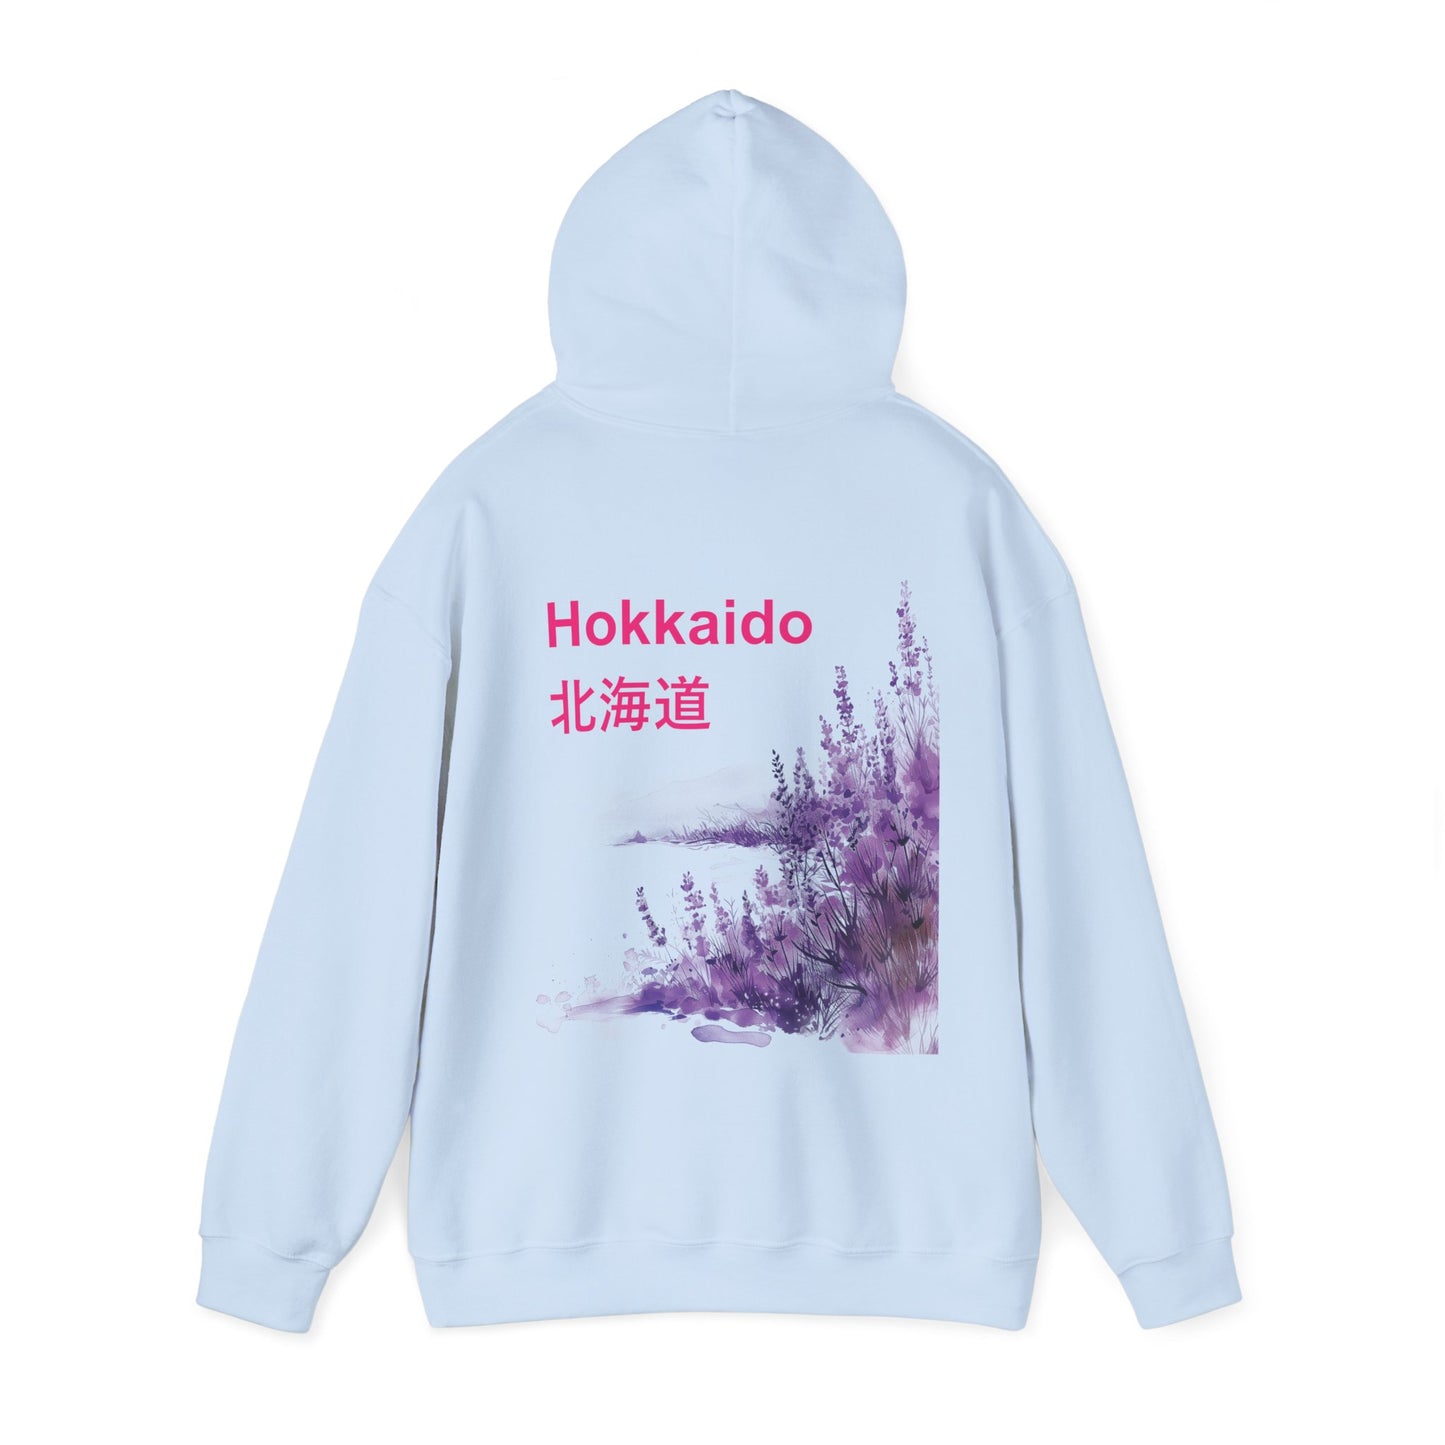 Hokkaido Hoodie, Japanese Sweatshirt, Lavender Sweater, Travel to Japan Hoodie, Visit Japan Hoodie, Gift for Her